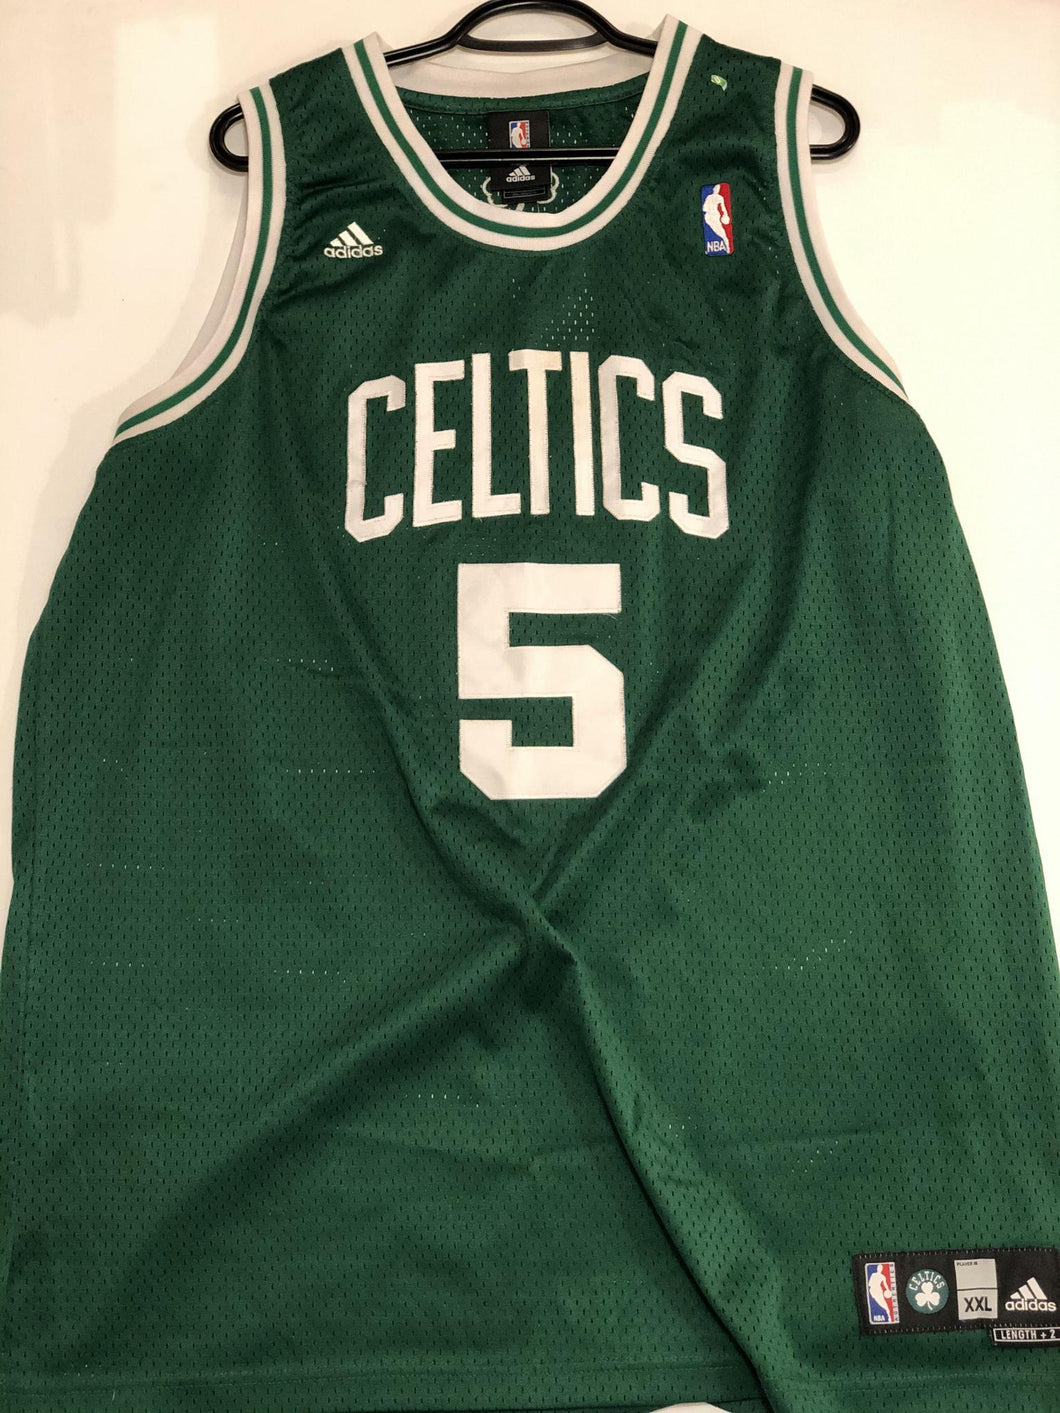 Celtics Jersey (Green) Garnett #5